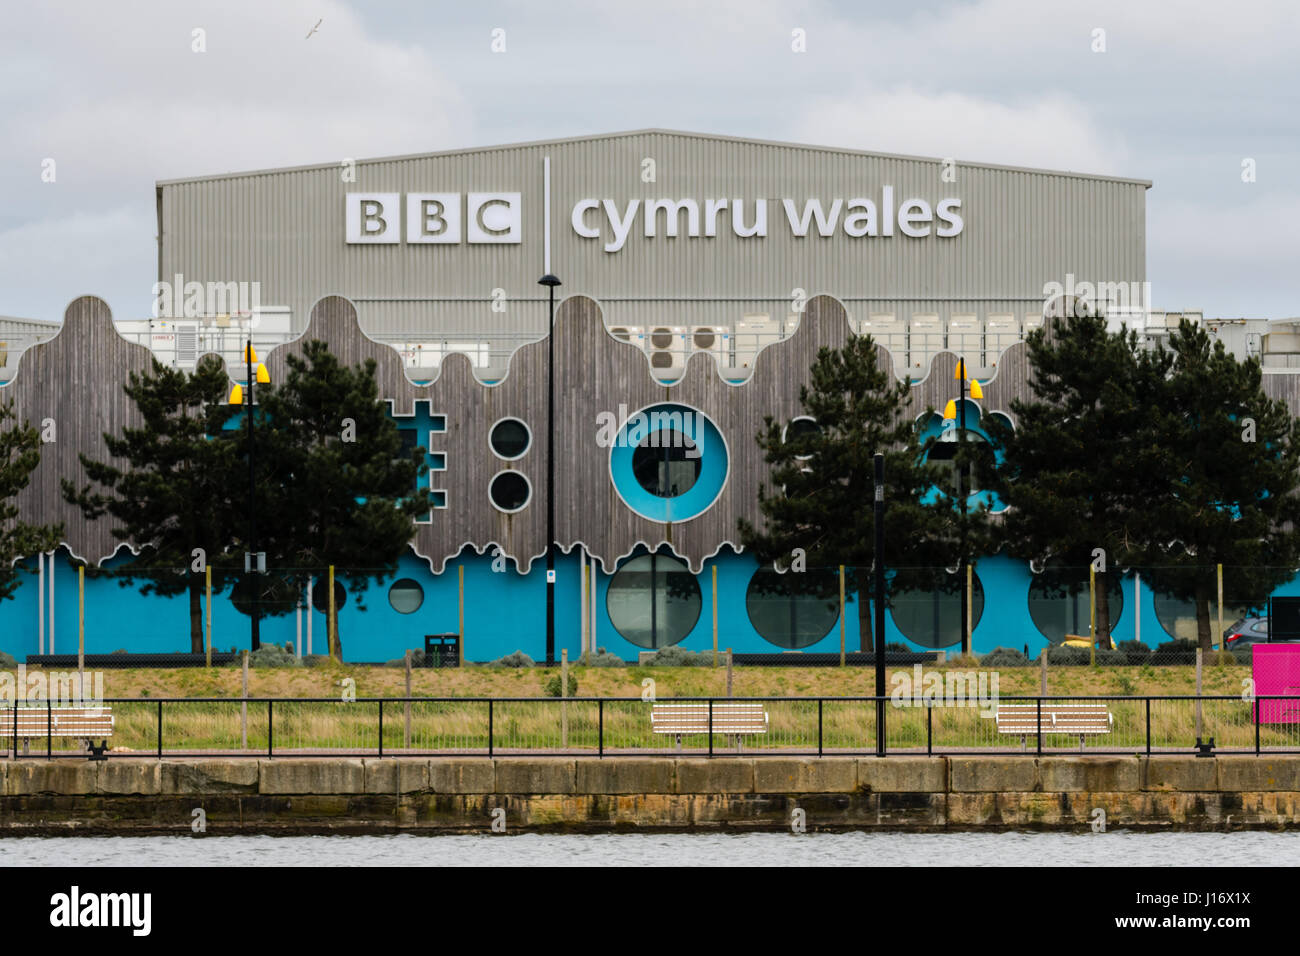 BBC Cymru Wales Roath bloccare Studios. La televisione impianto produttivo nel bacino Roath al Porth Teigr area della Baia di Cardiff Foto Stock